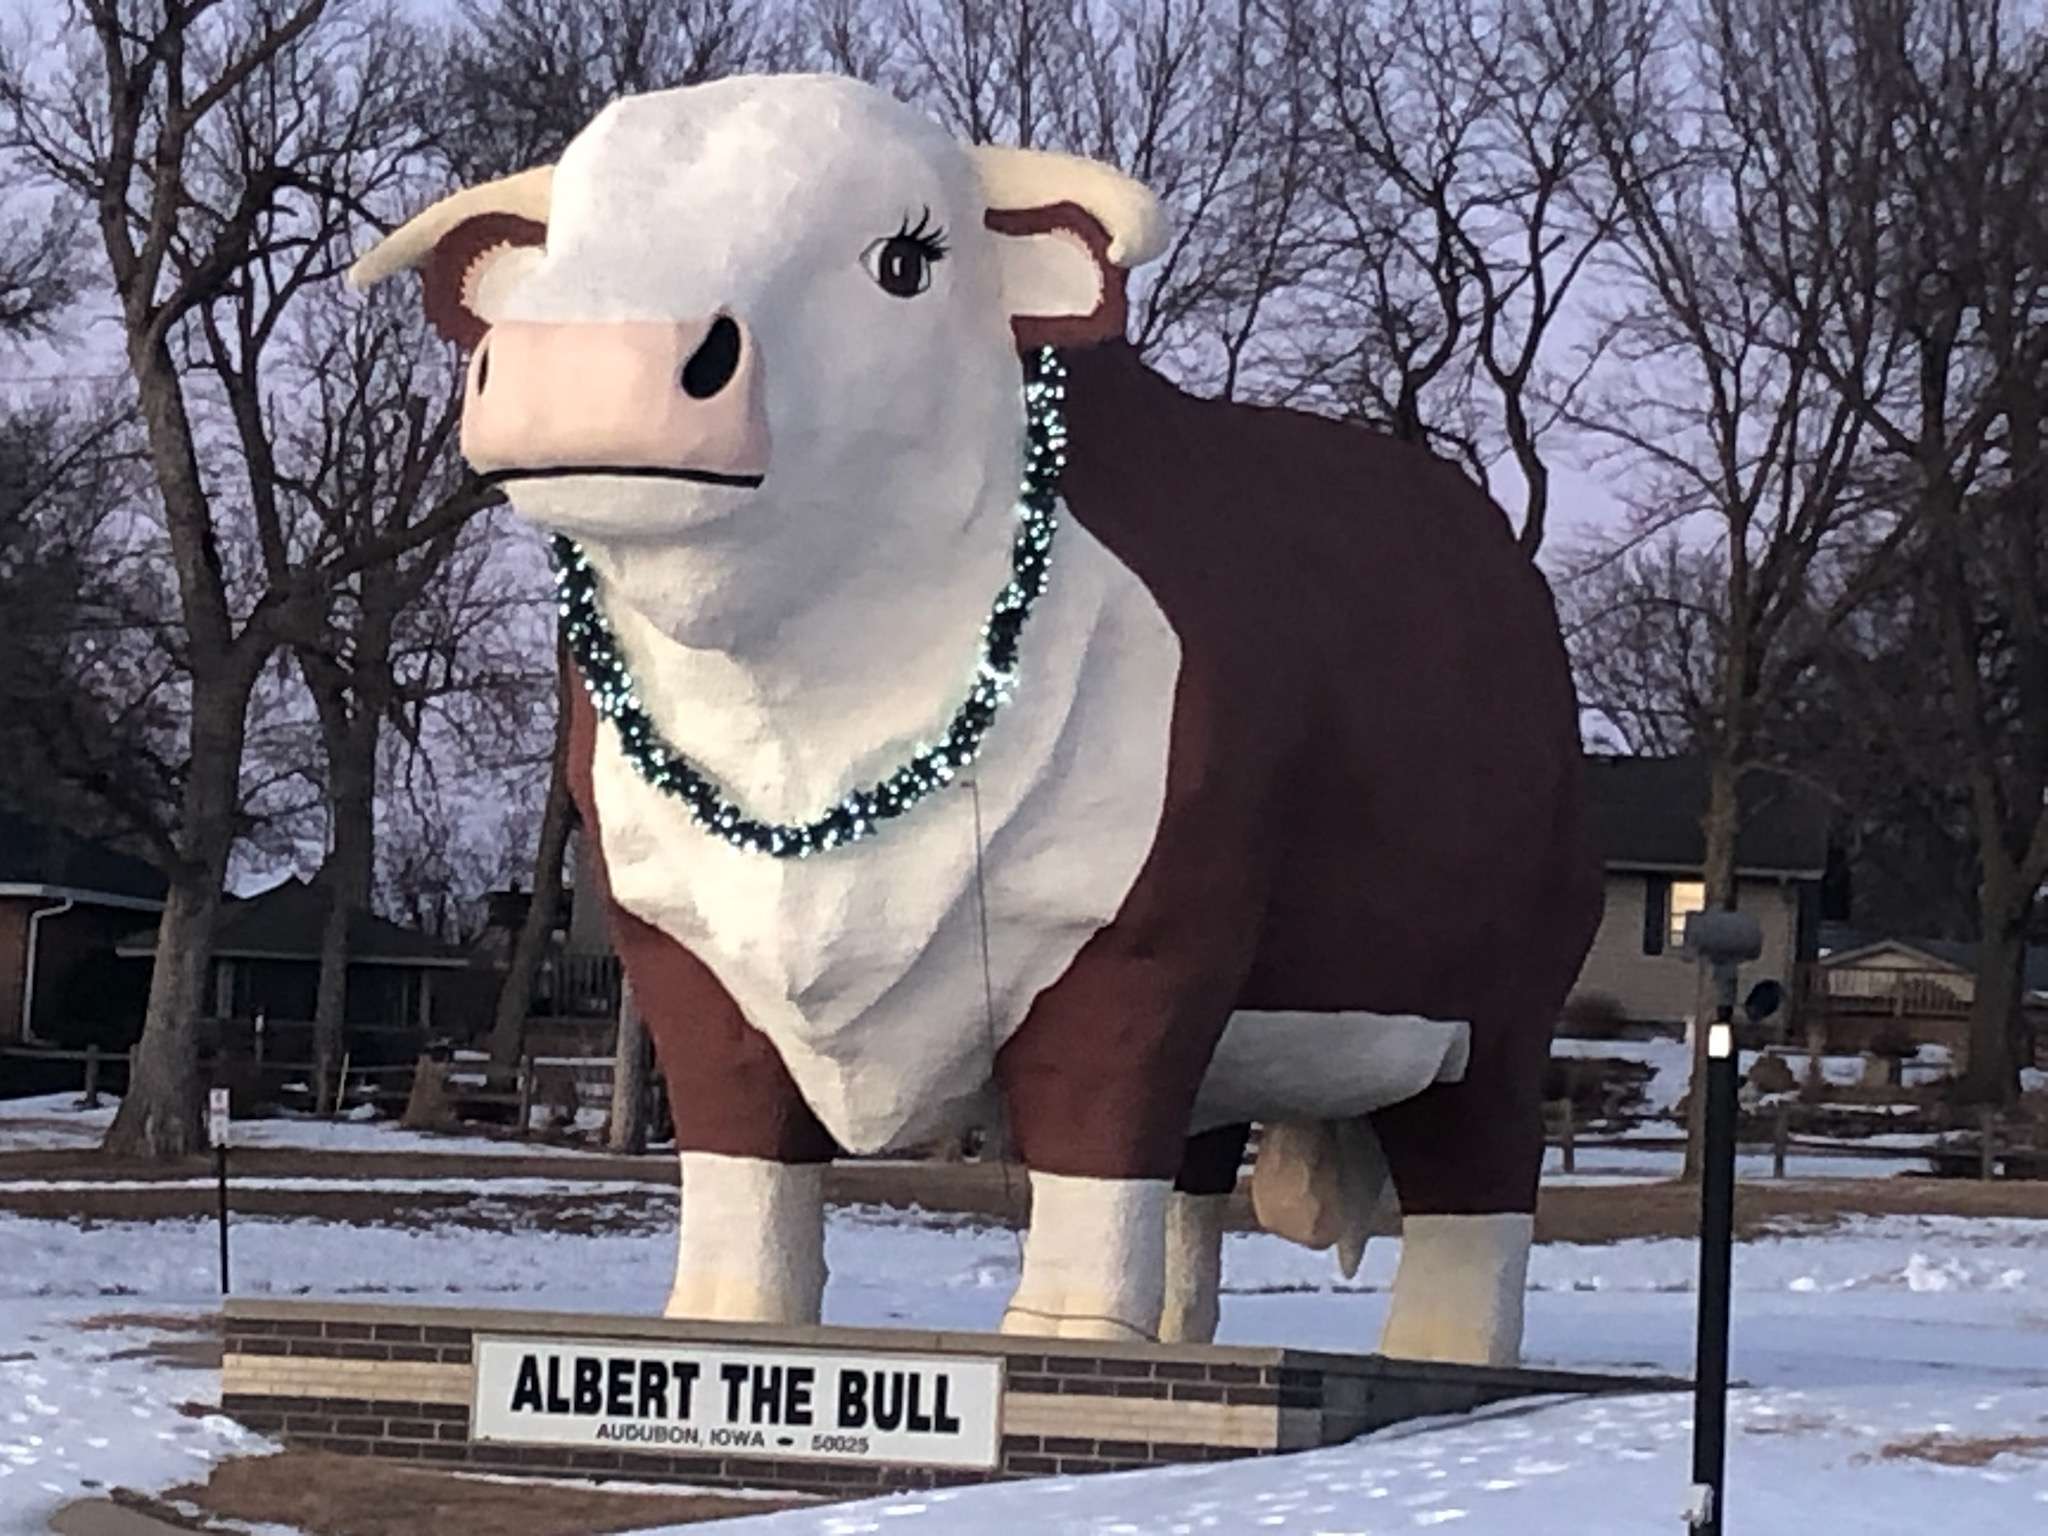 Albert the Bull statue